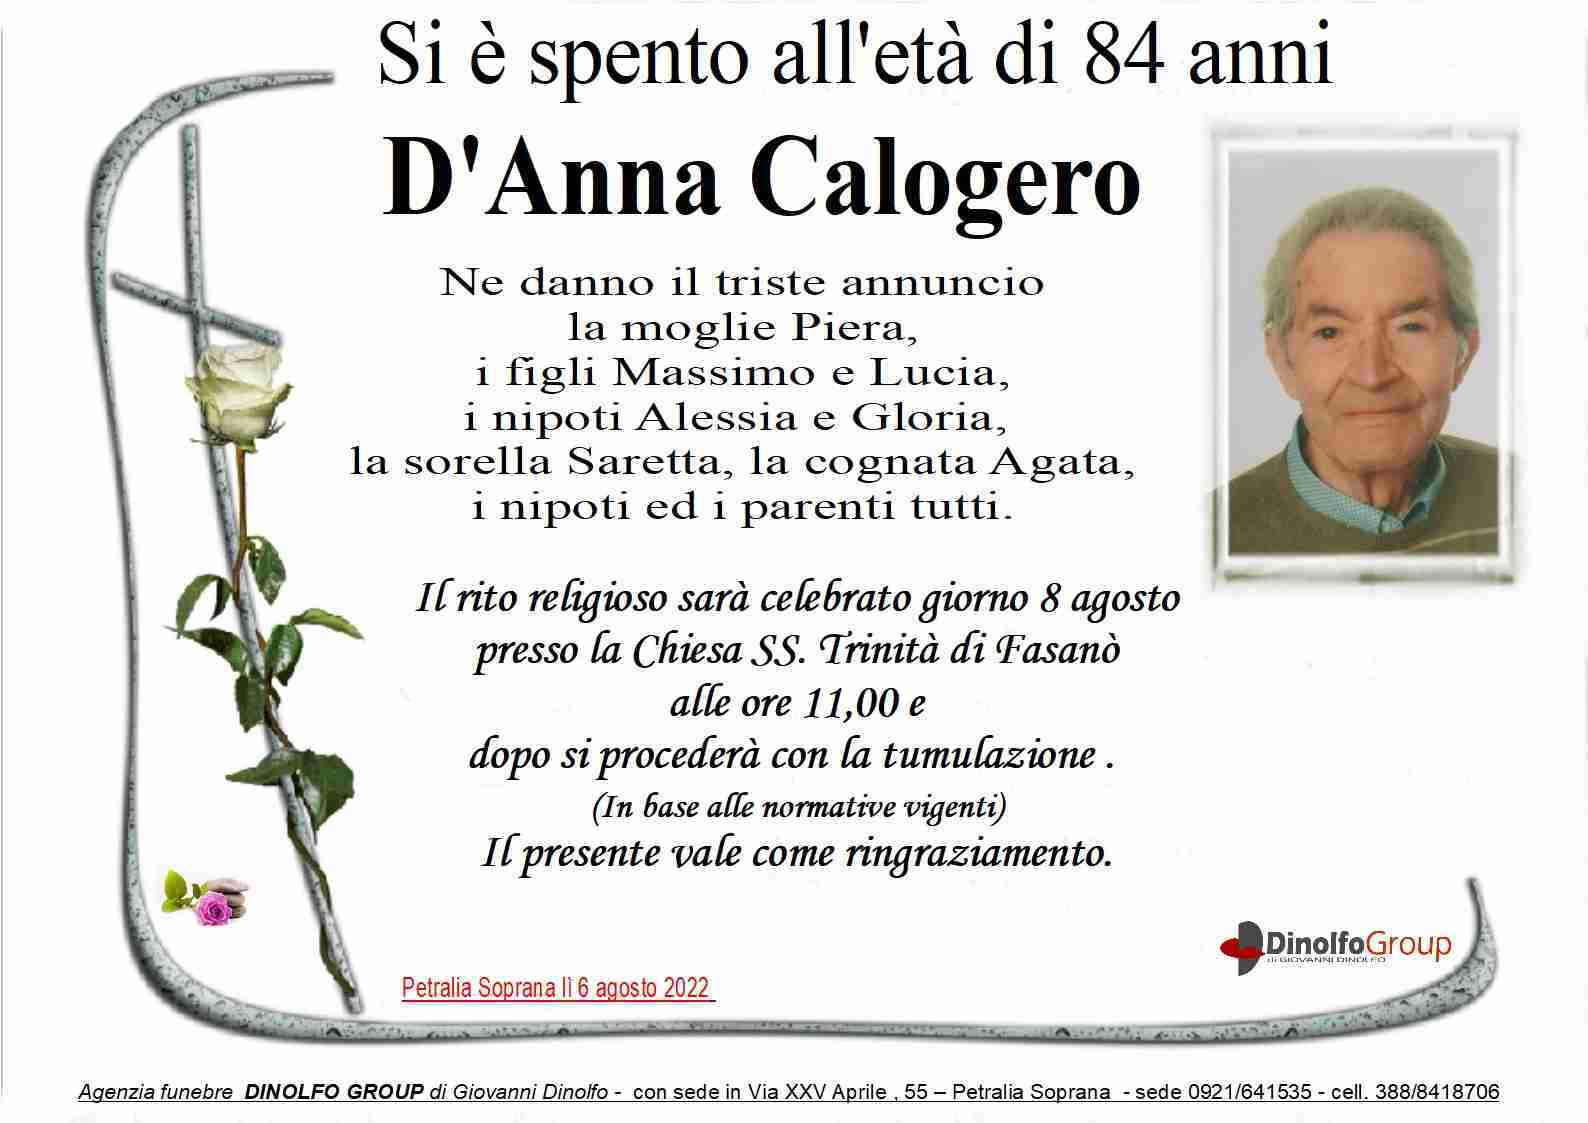 Calogero D'Anna